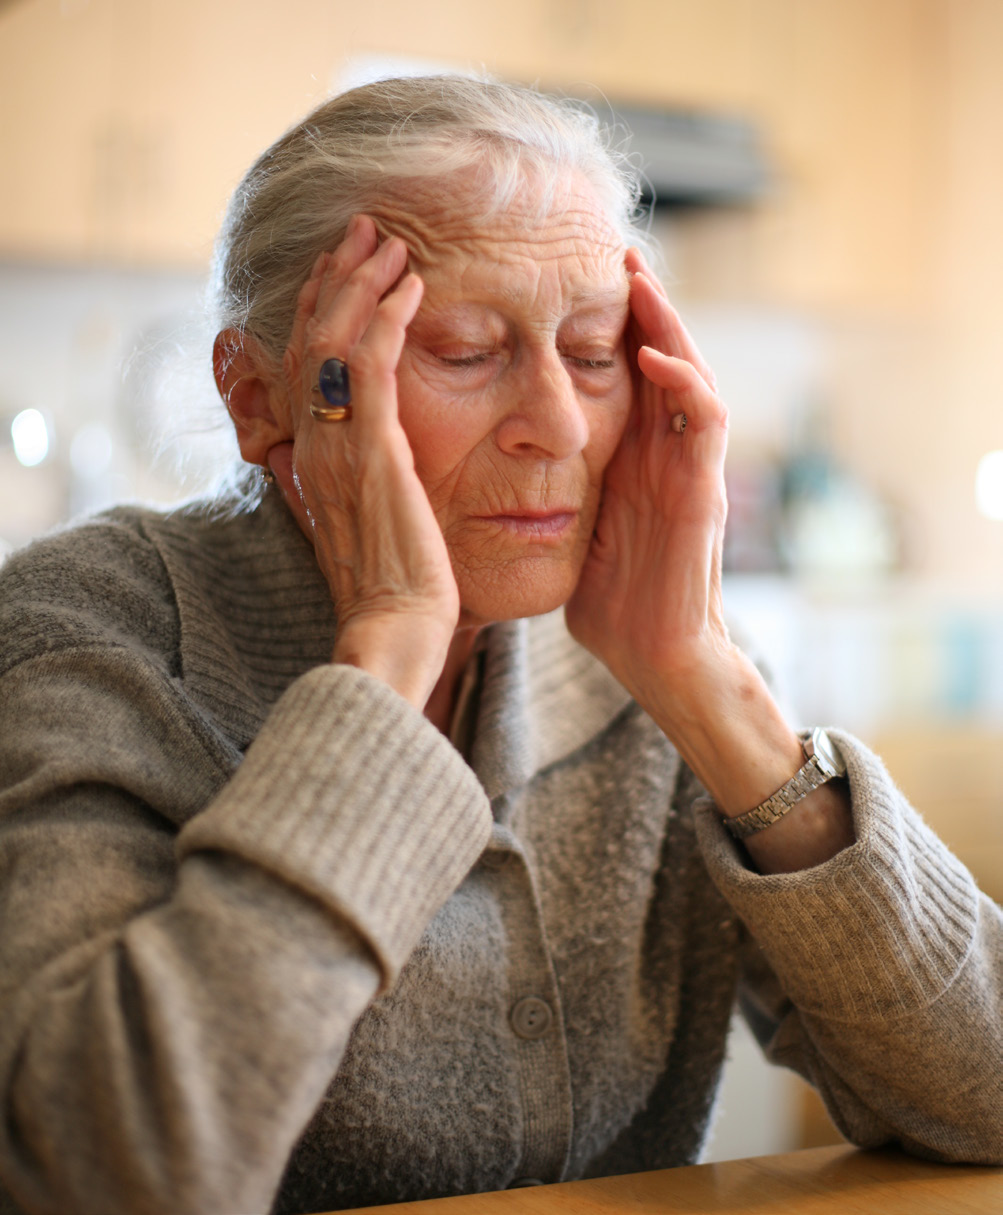 Elderly Women with Hands on her Head